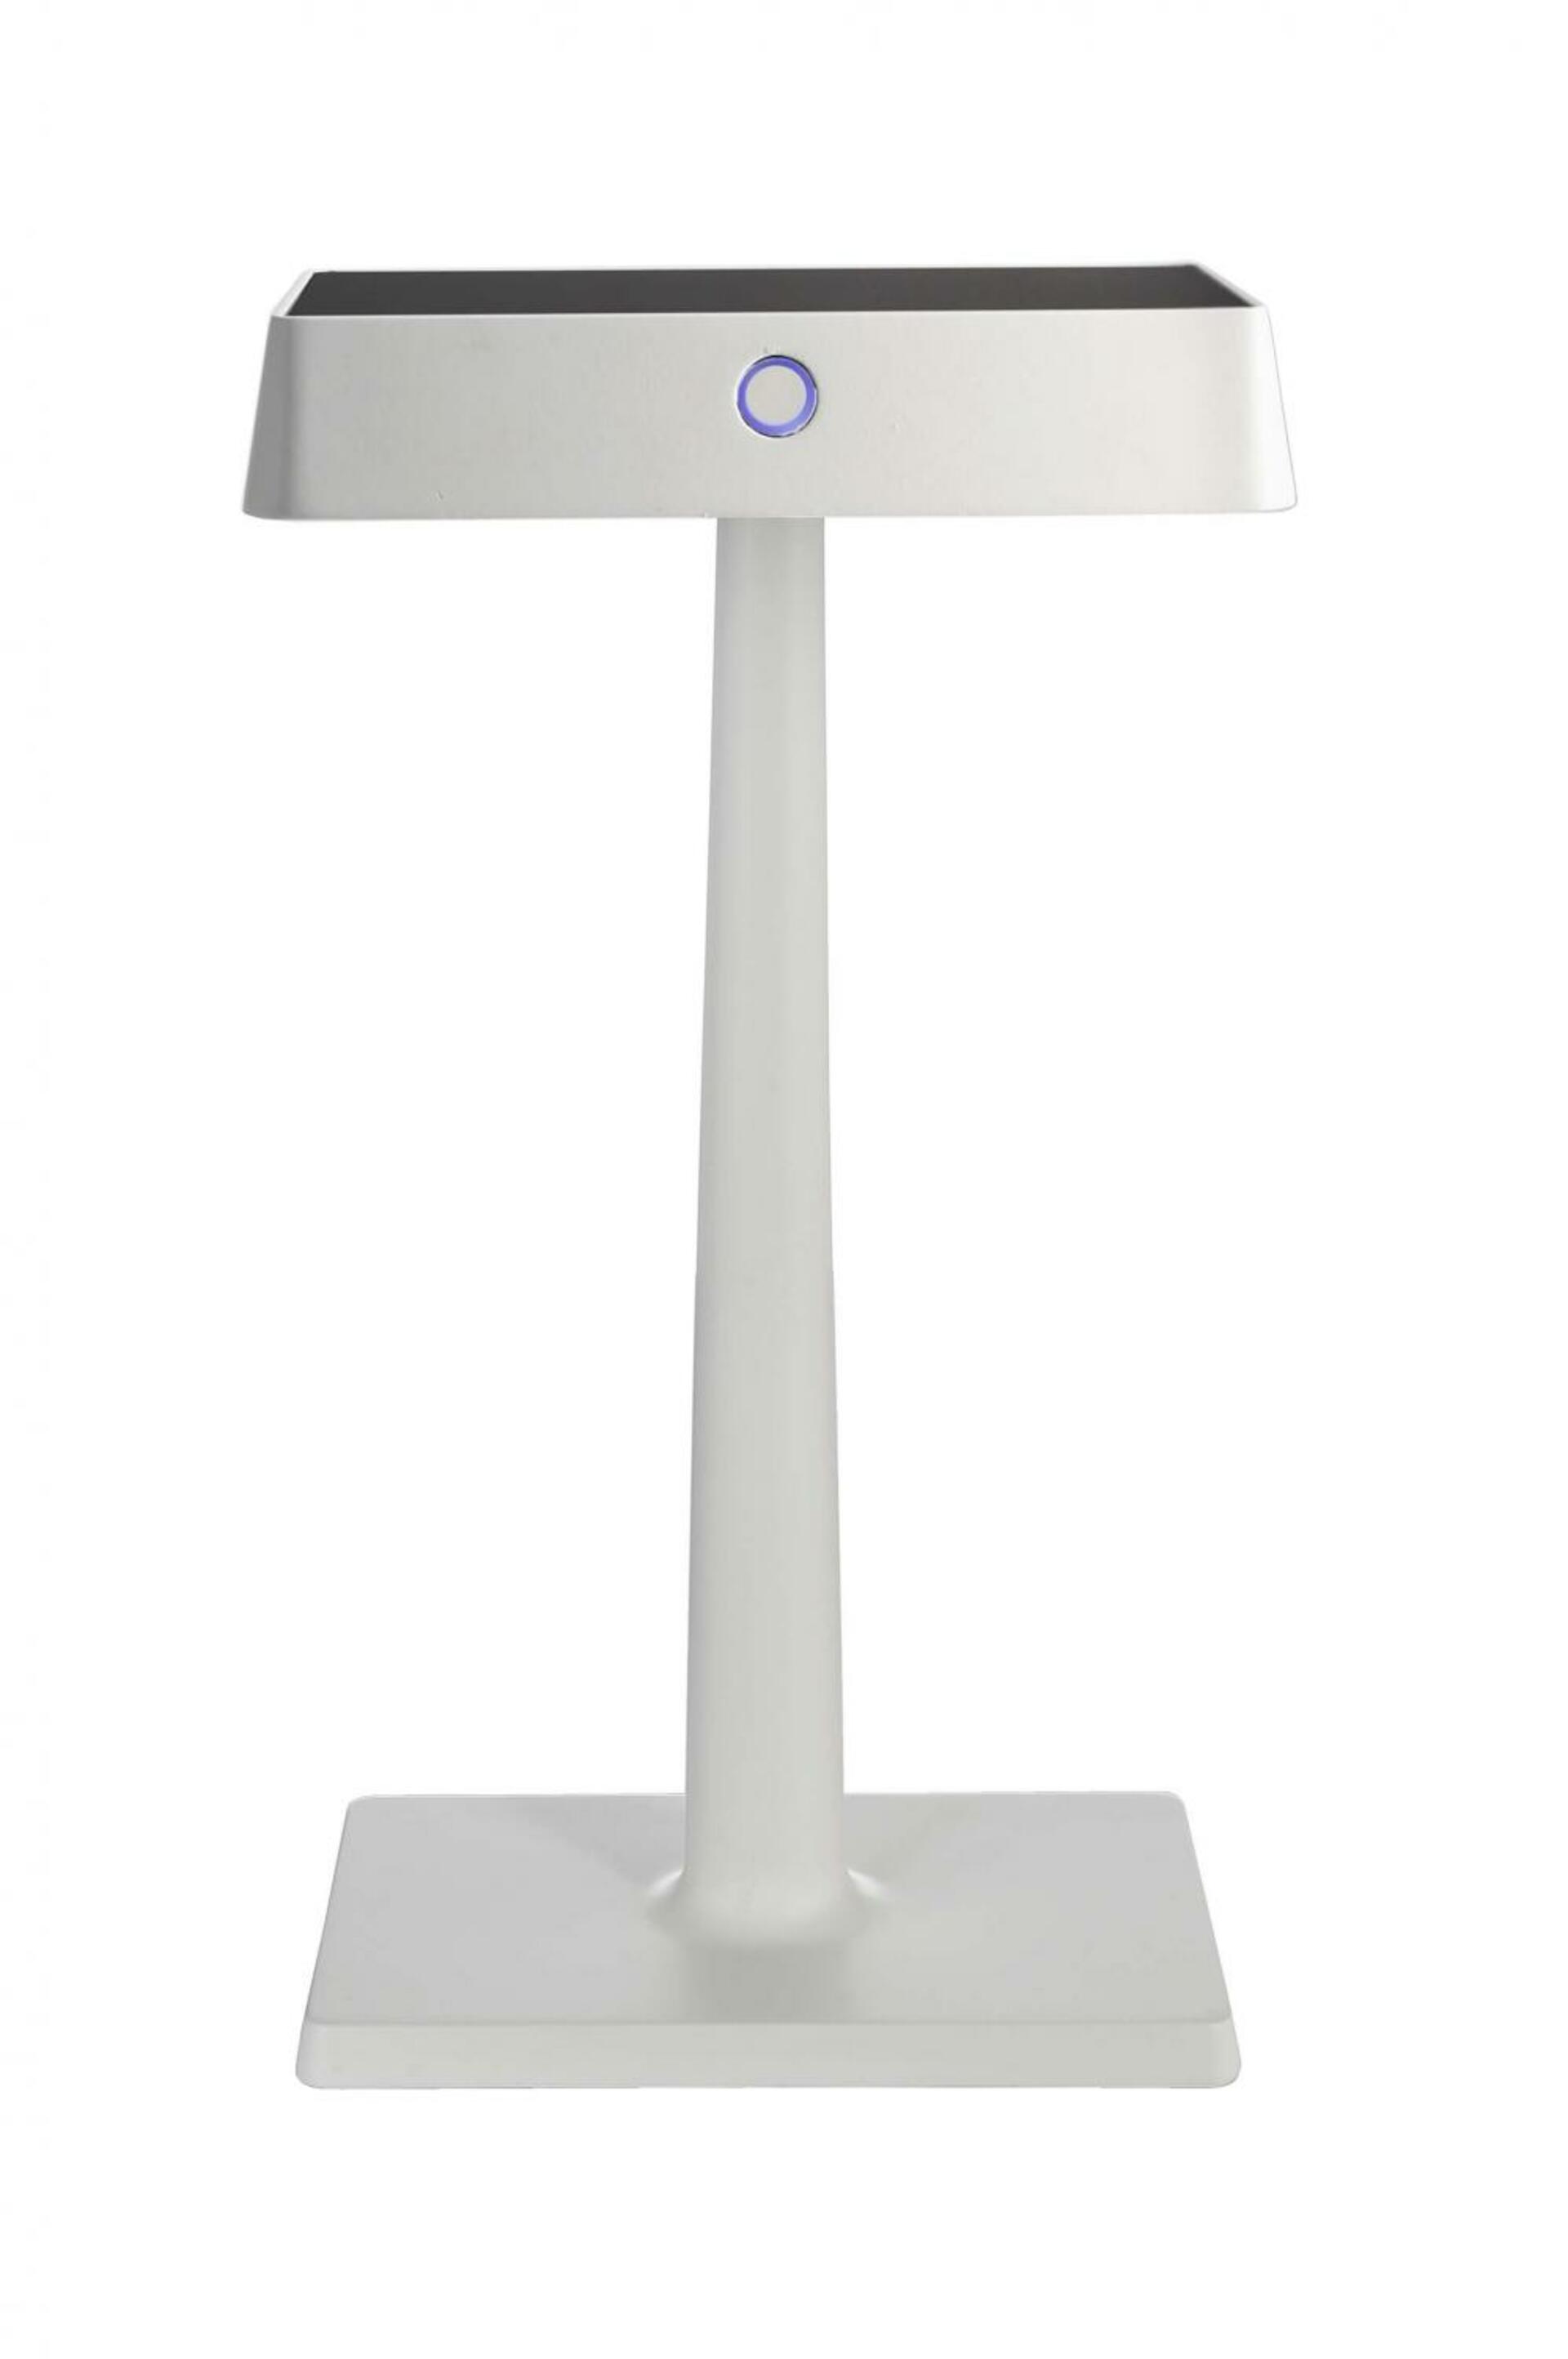 Light Impressions Deko-Light stolní lampa Algieba 3,7V DC 2,20 W 3000 K 212 lm 175 bílá s bezdrátovým nabíjením telefonu 346038